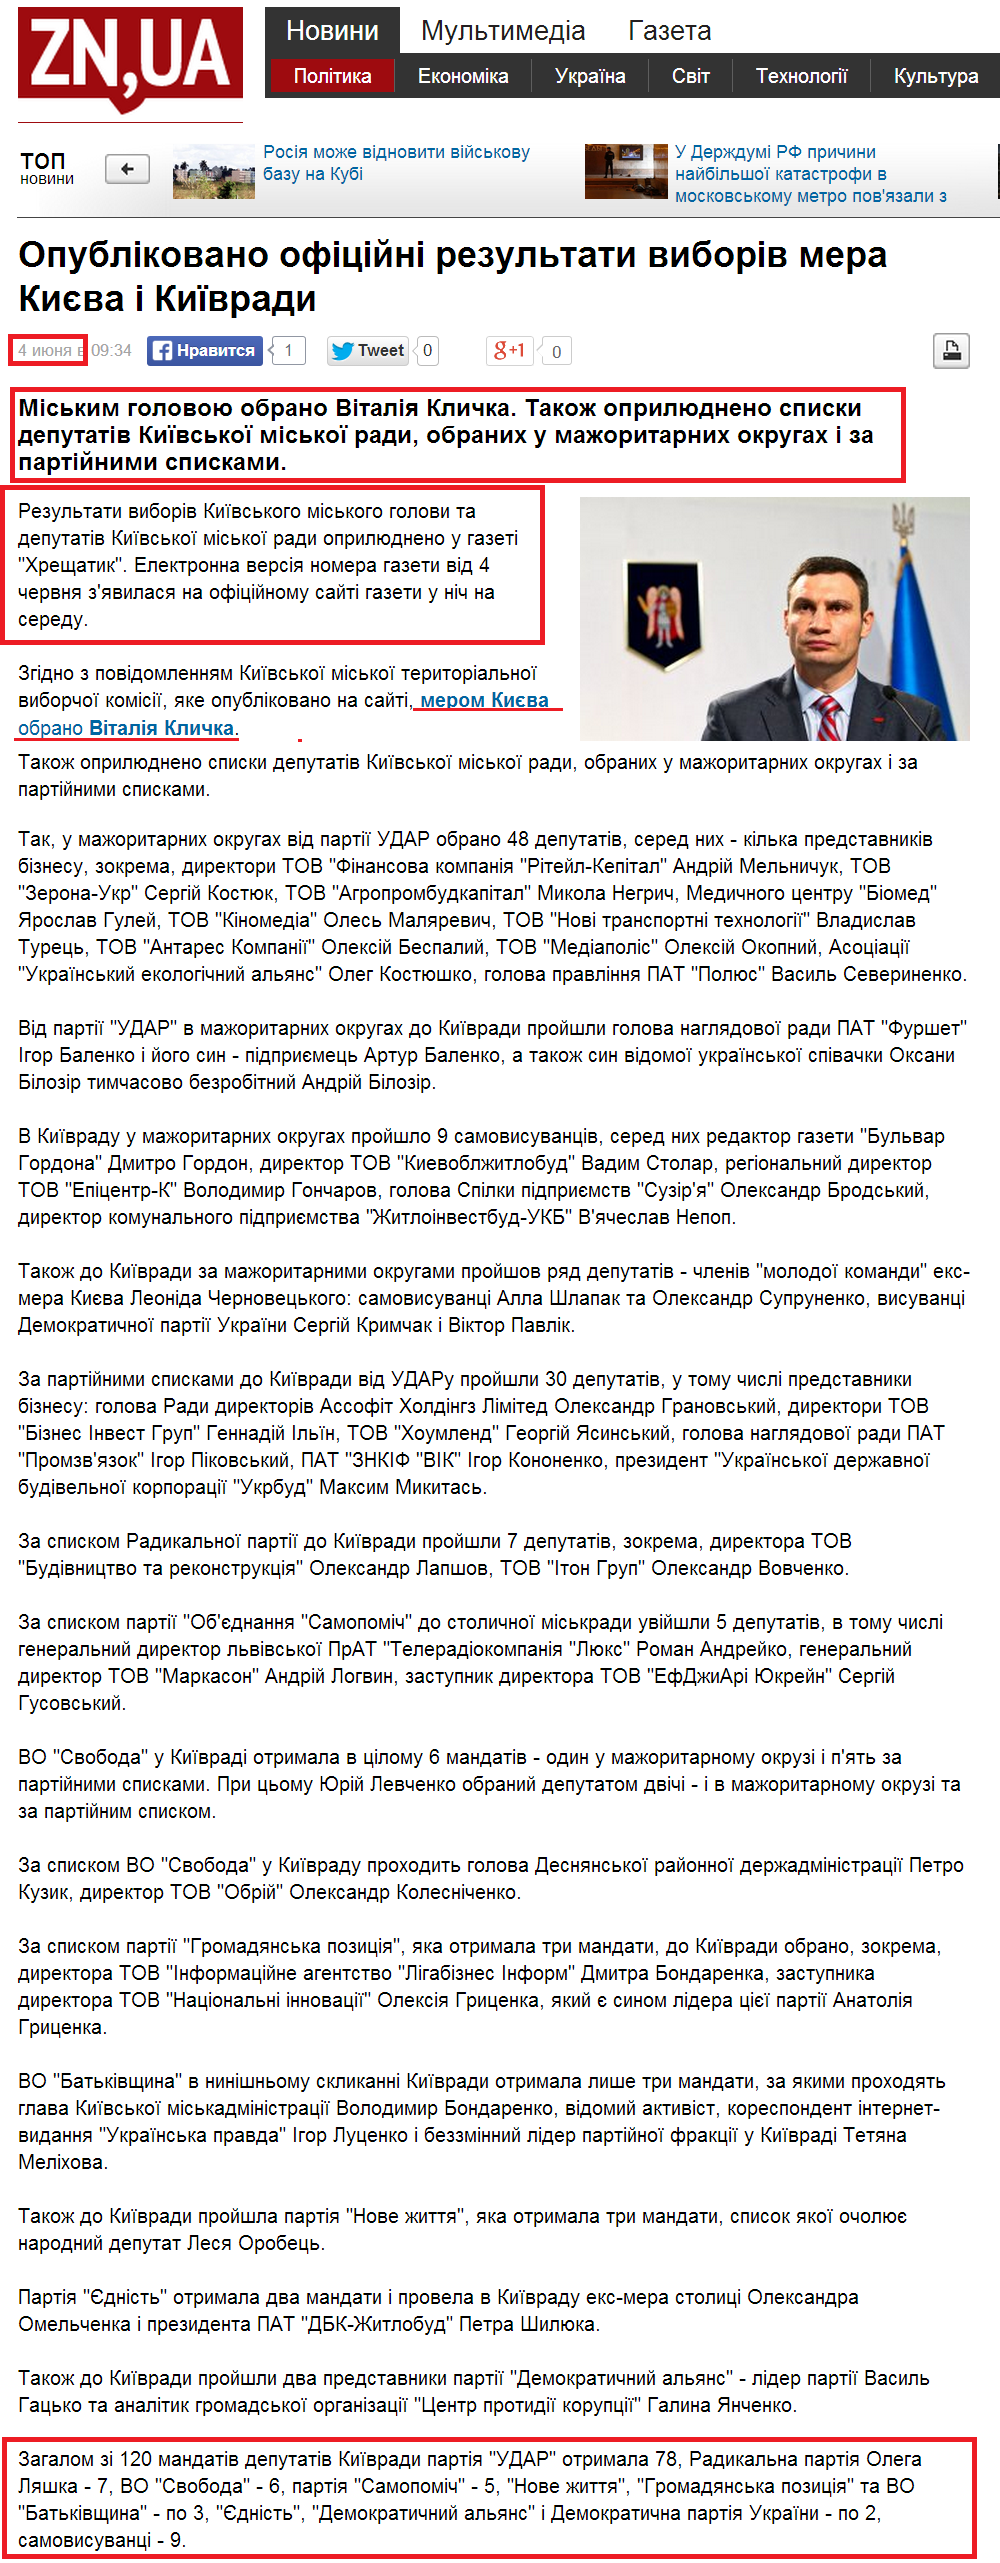 http://dt.ua/POLITICS/opublikovano-oficiyni-rezultati-viboriv-mera-kiyeva-i-kiyivradi-144503_.html